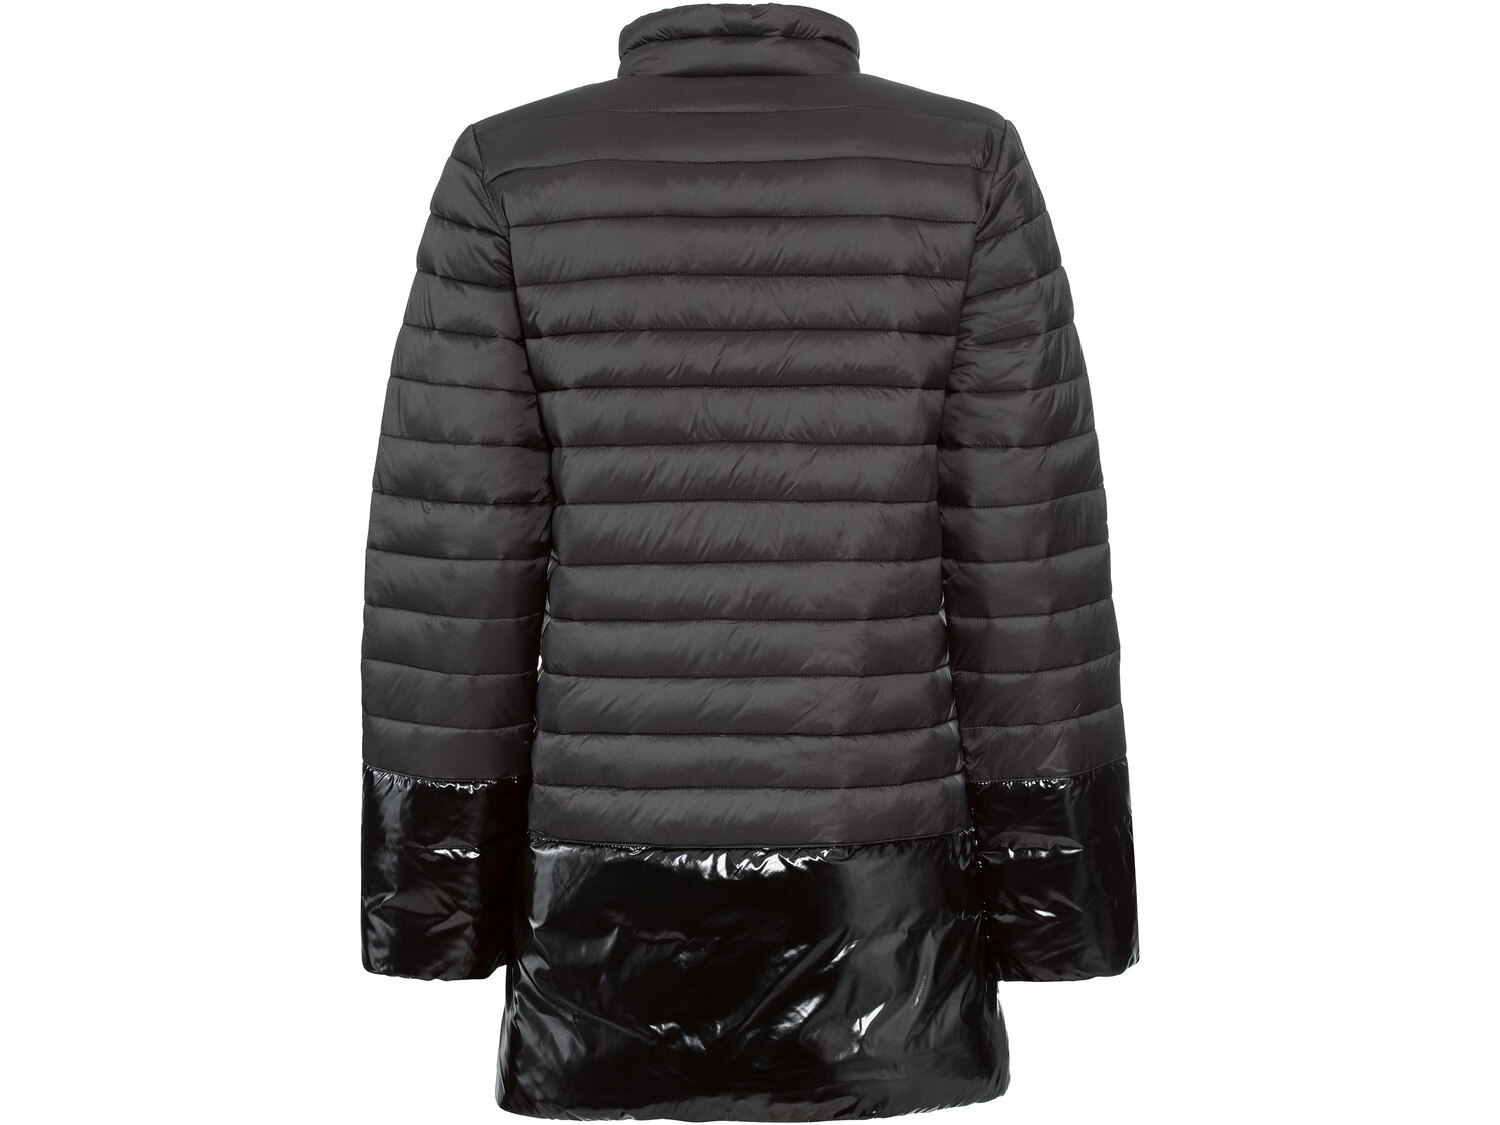 Płaszcz termiczny damski Esmara, cena 64,90 PLN 
- rozmiary: 36-44
- niewchłaniający ...